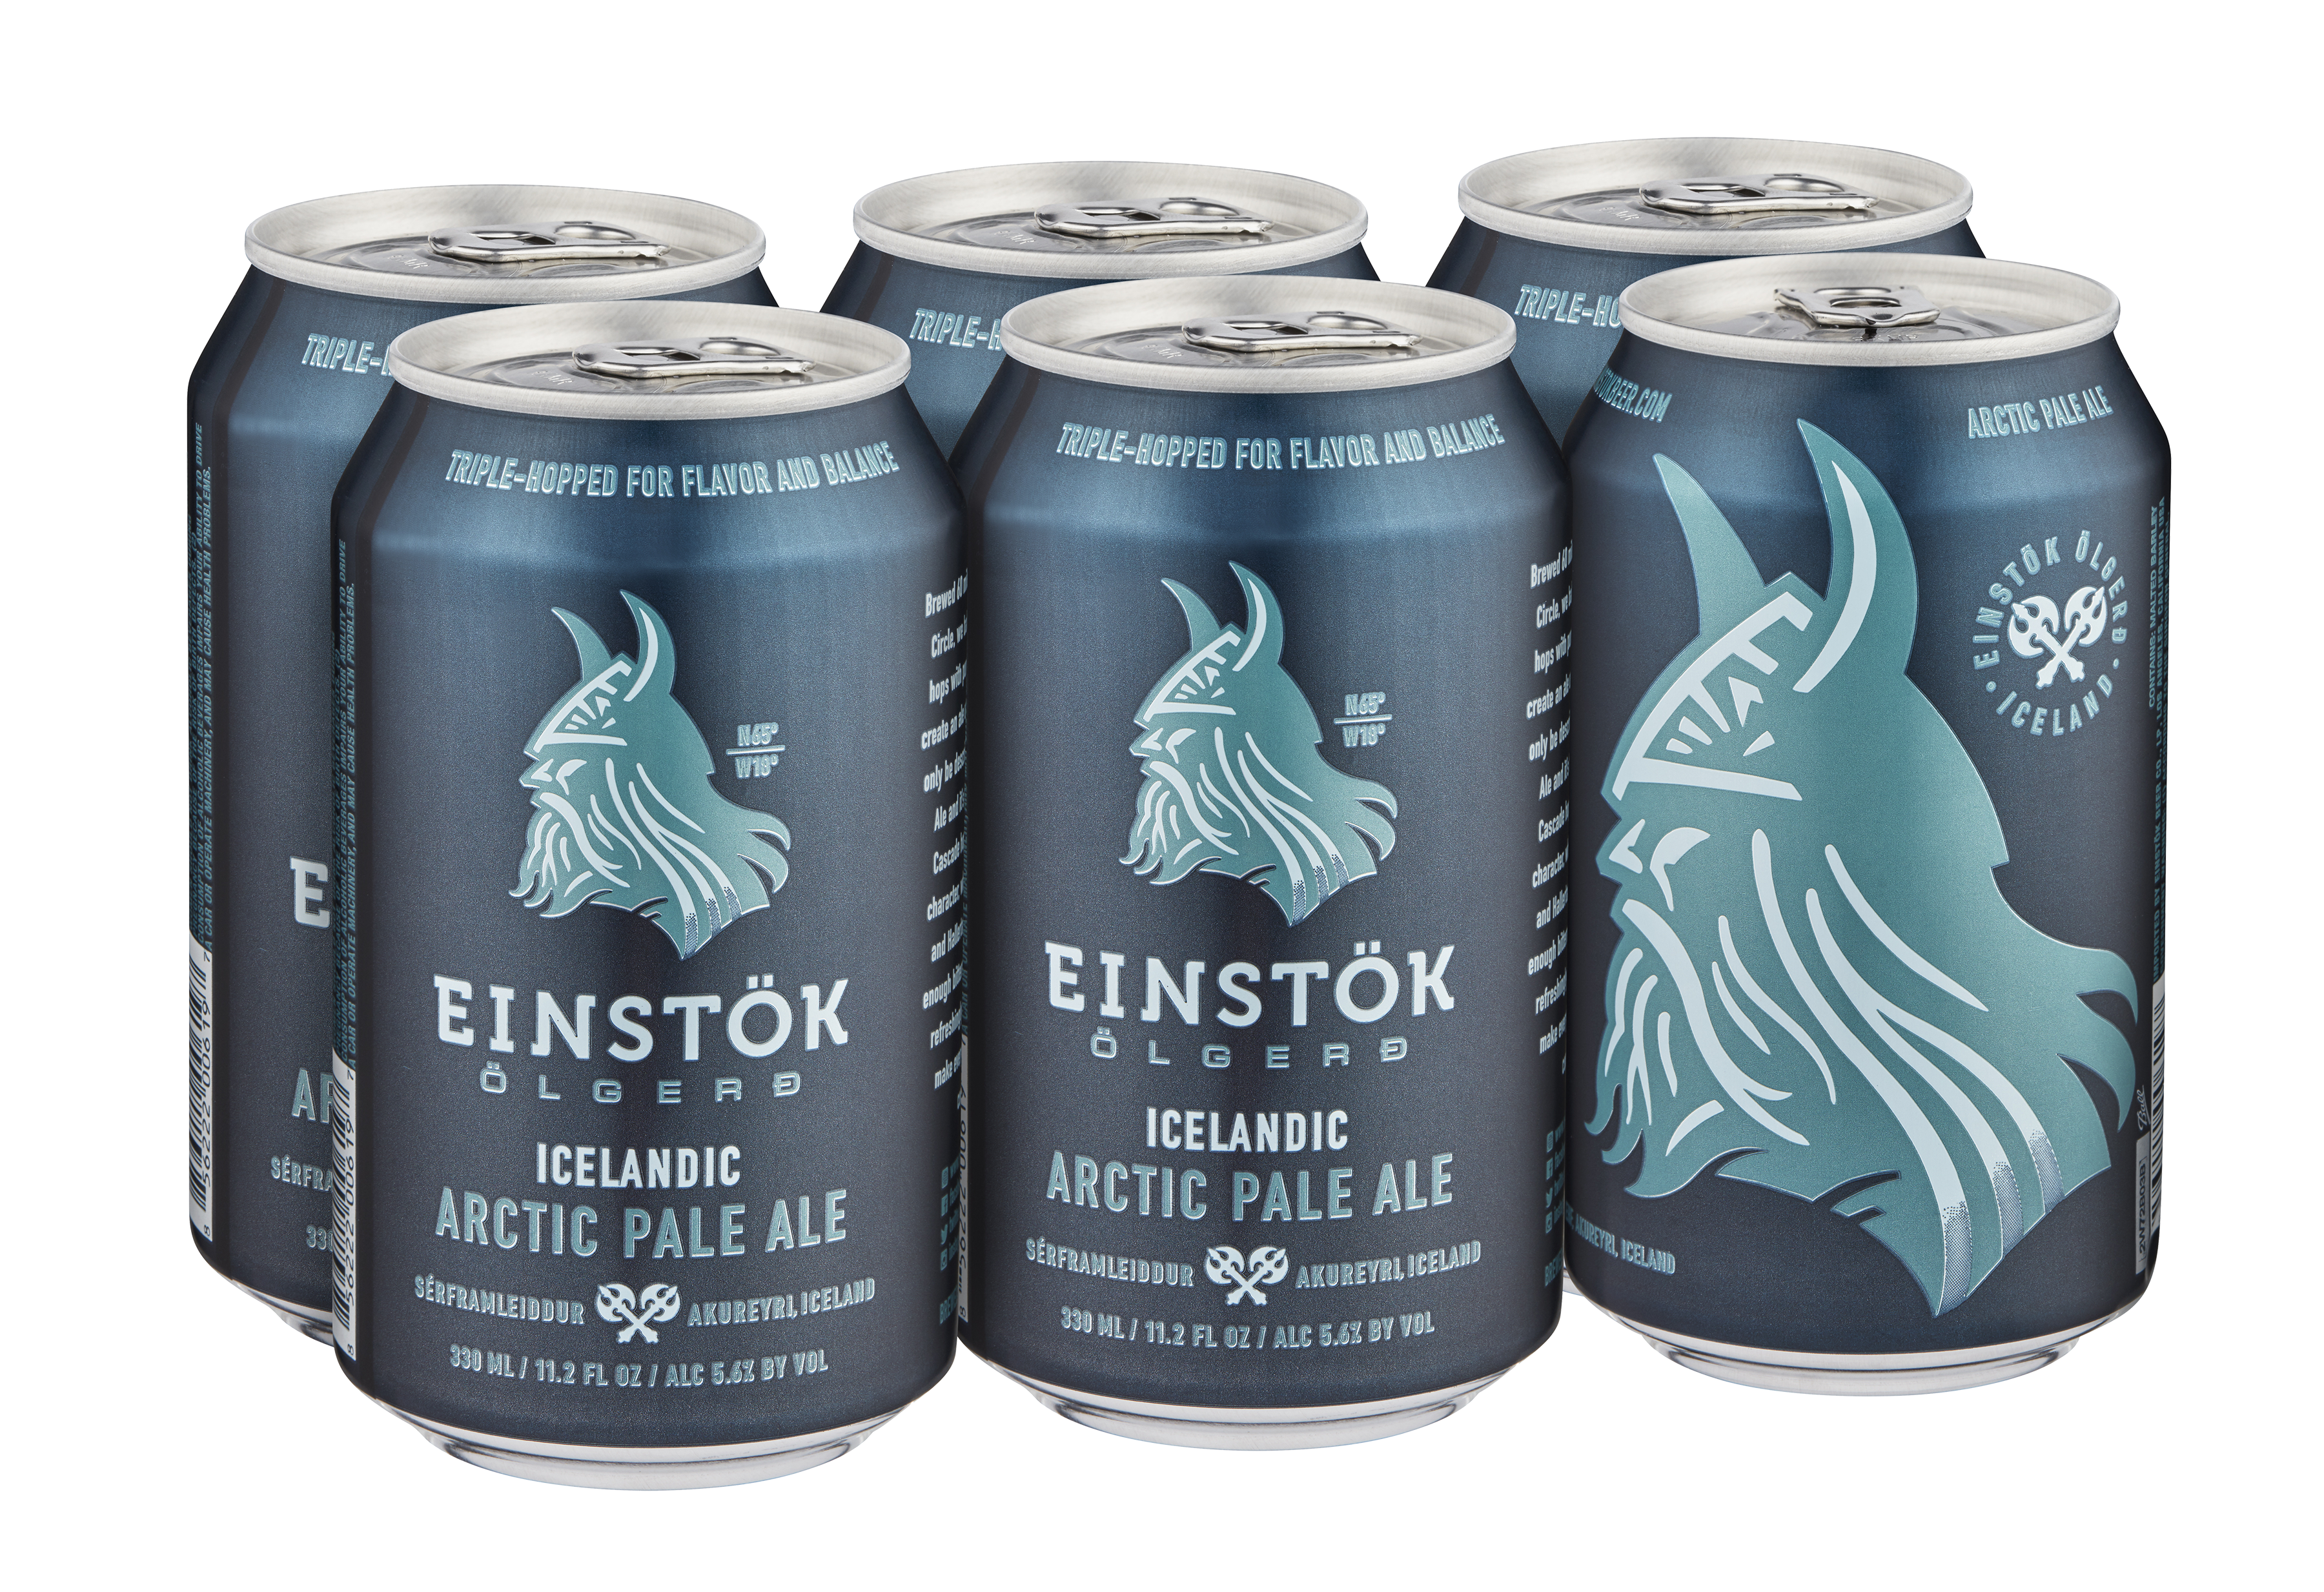 Six pack of Einstök Arctic Pale Ale beer